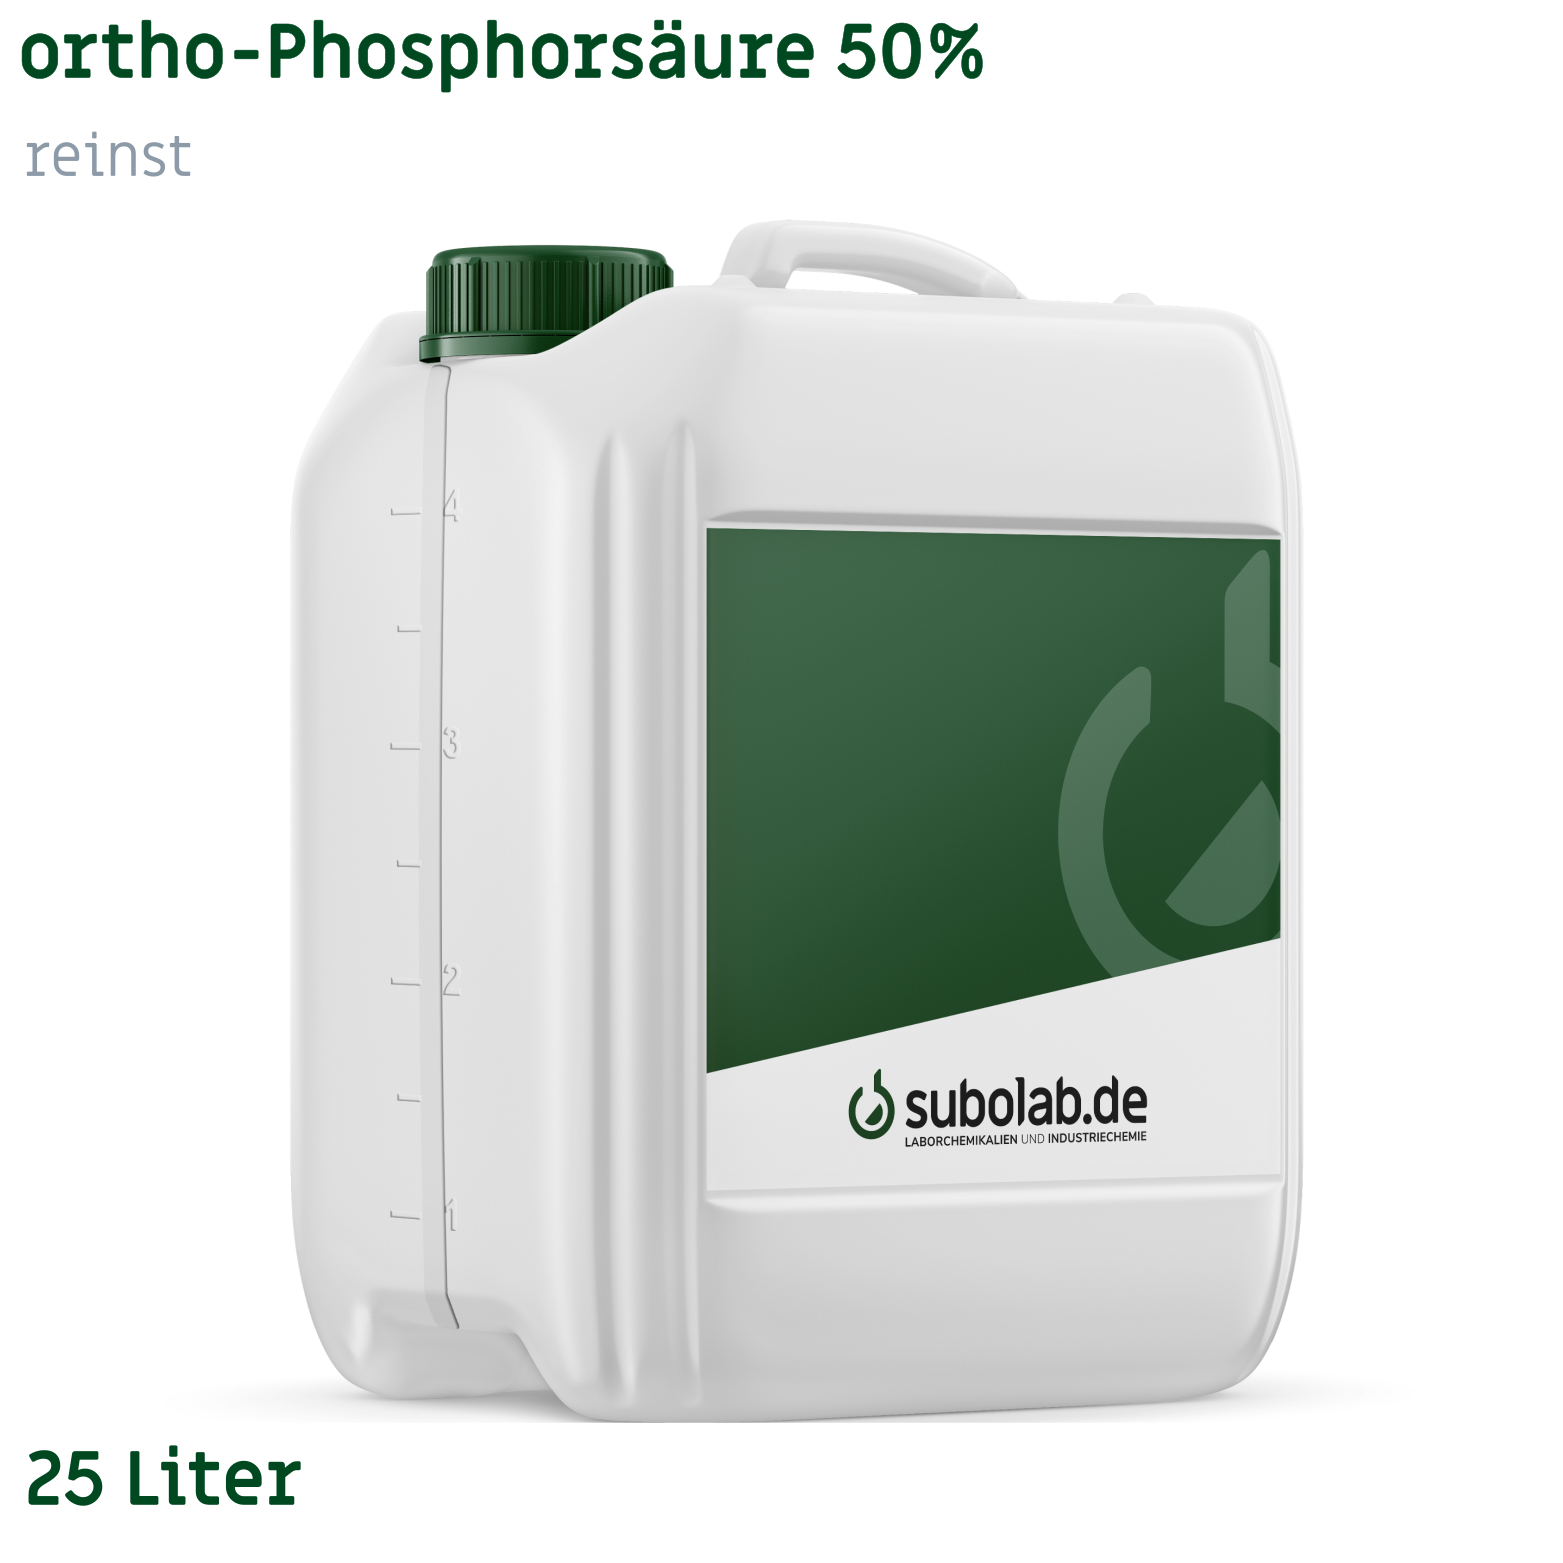 Bild von ortho-Phosphorsäure 50% reinst (25 Liter)